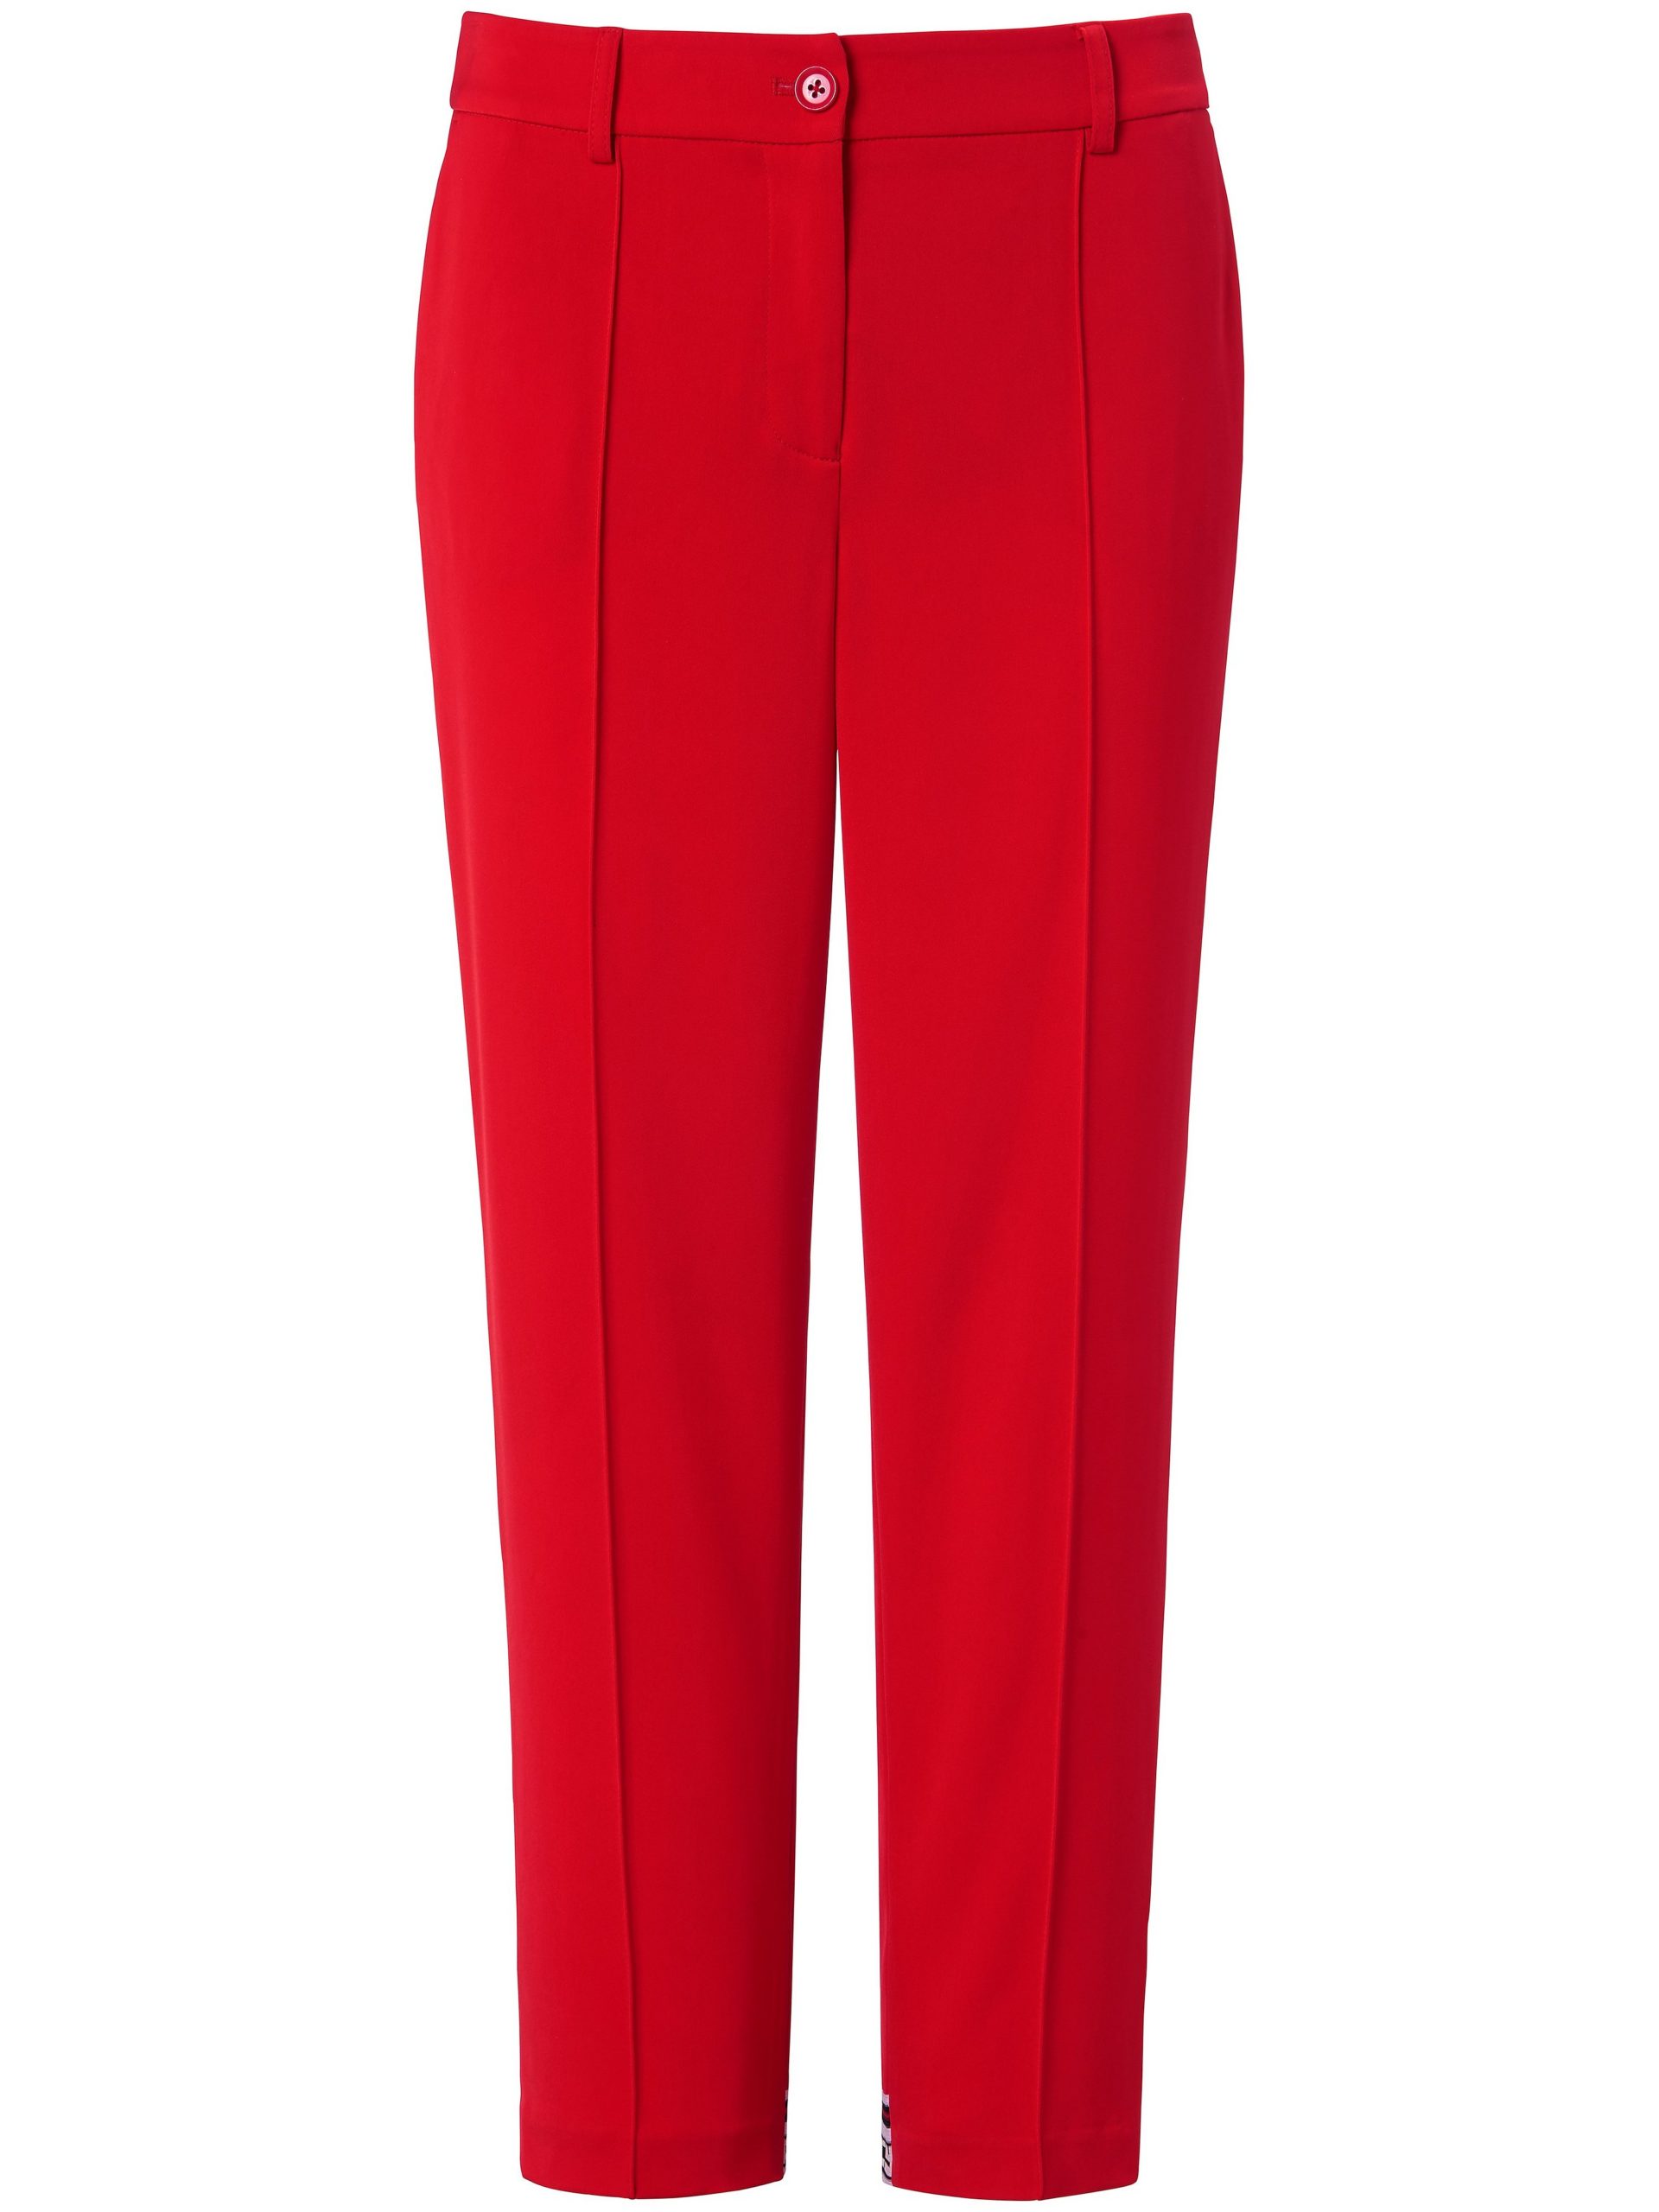 Enkellange broek met biezen voor Van Marc Aurel rood Kopen